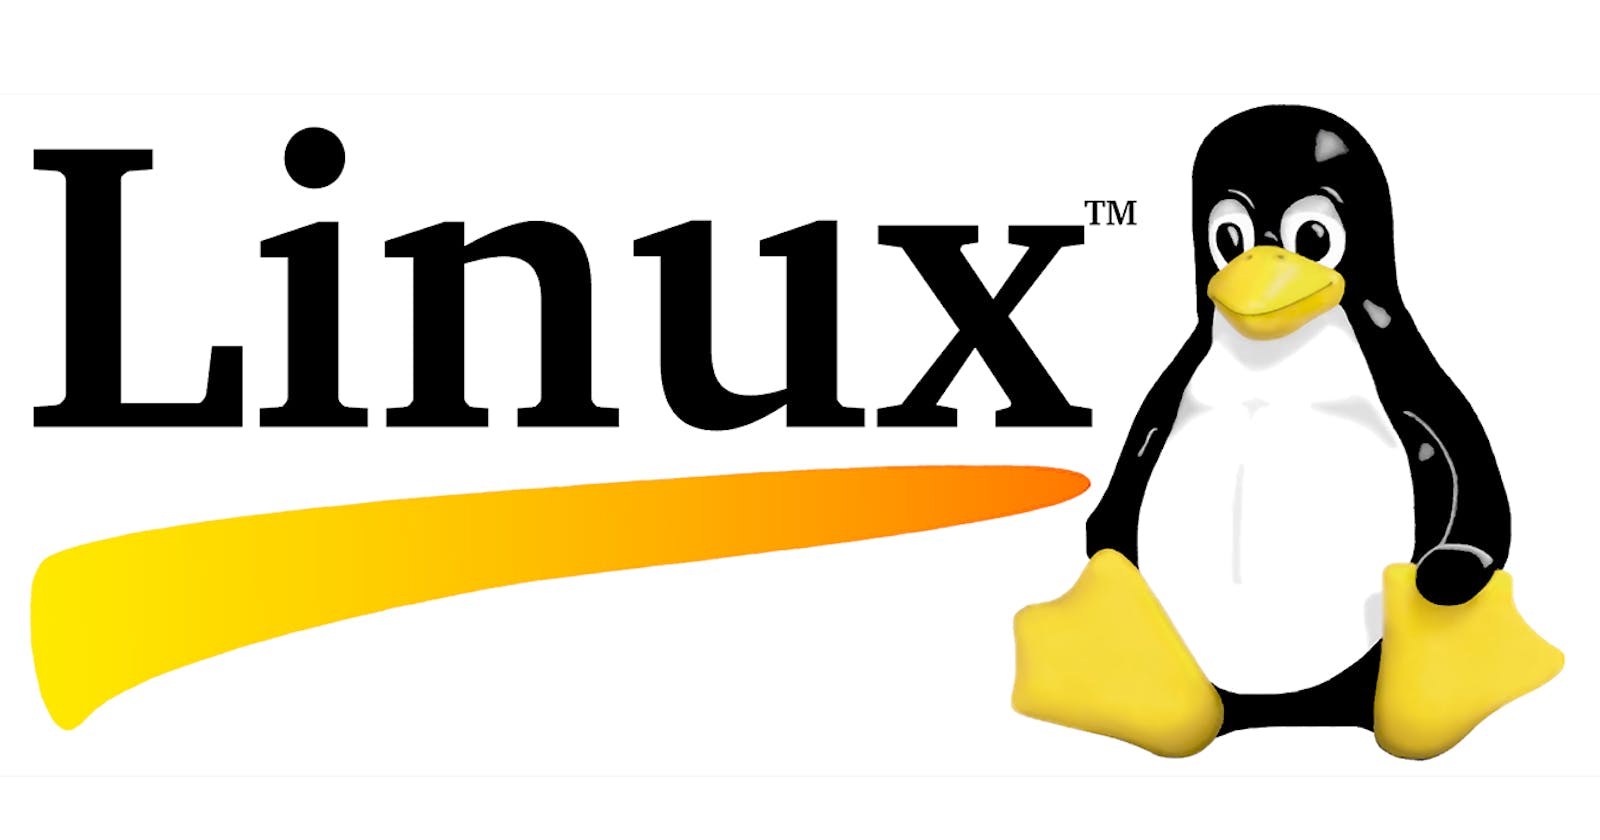 Linux commands